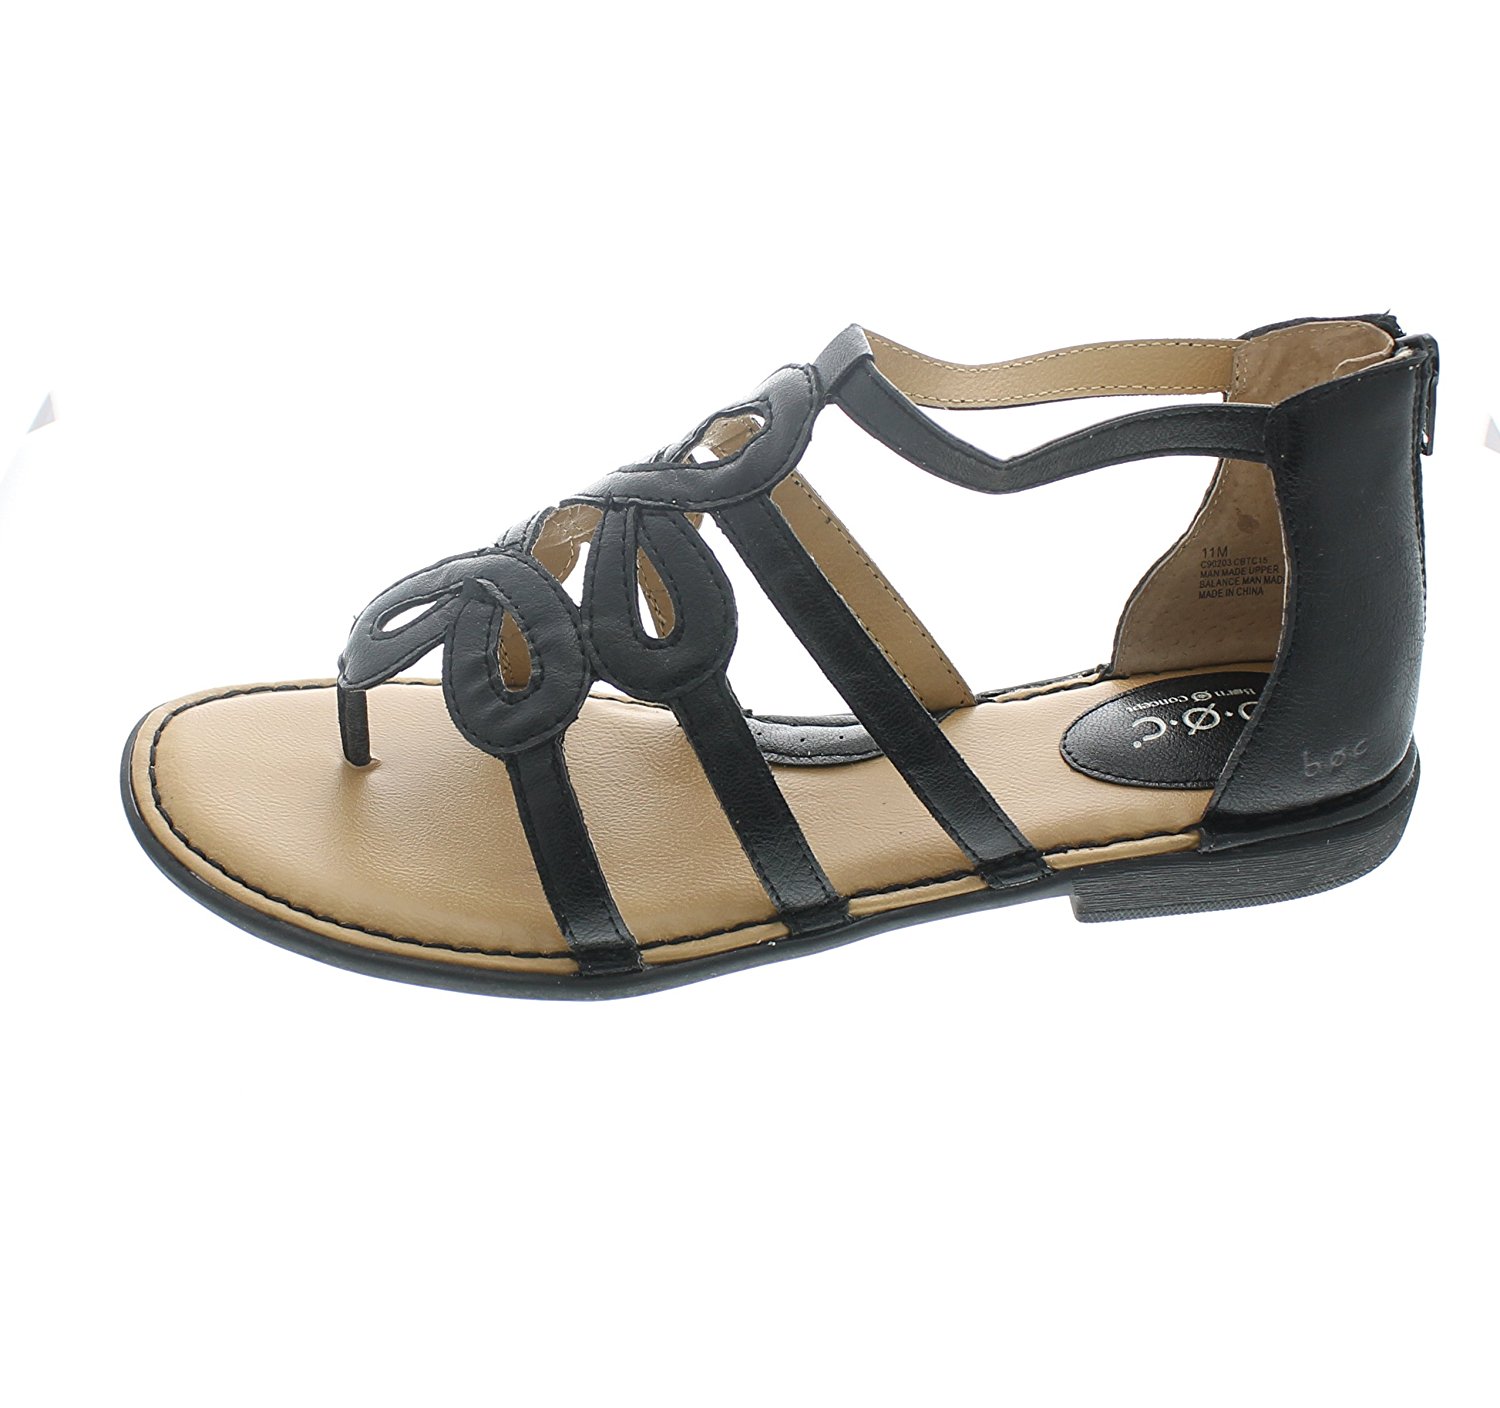 Boc Born Concept Women's Sigrid Thong Sandals, Black, Size 8.0 US / 6 ...